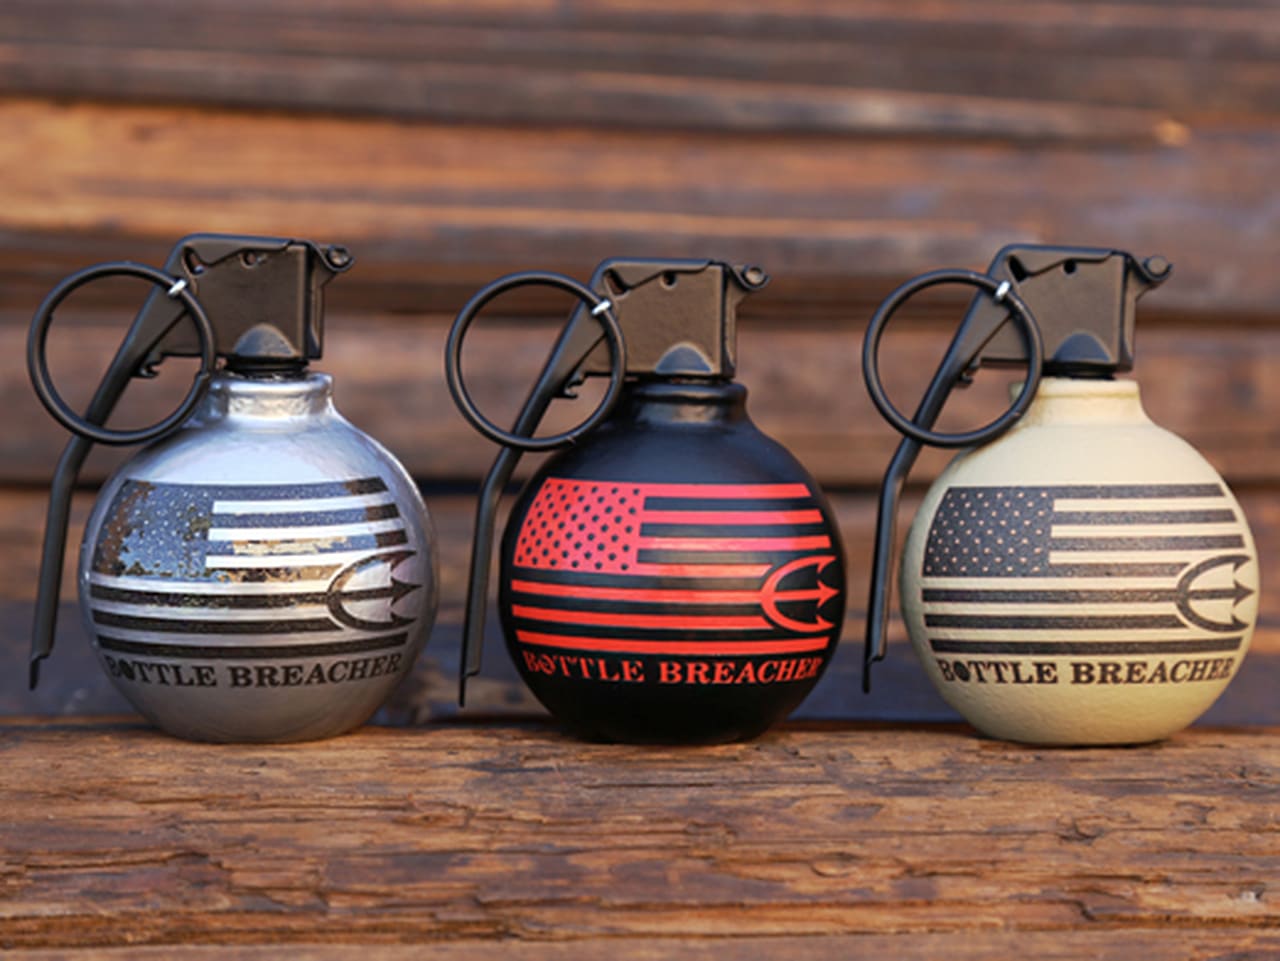 grenade-style bottle openers